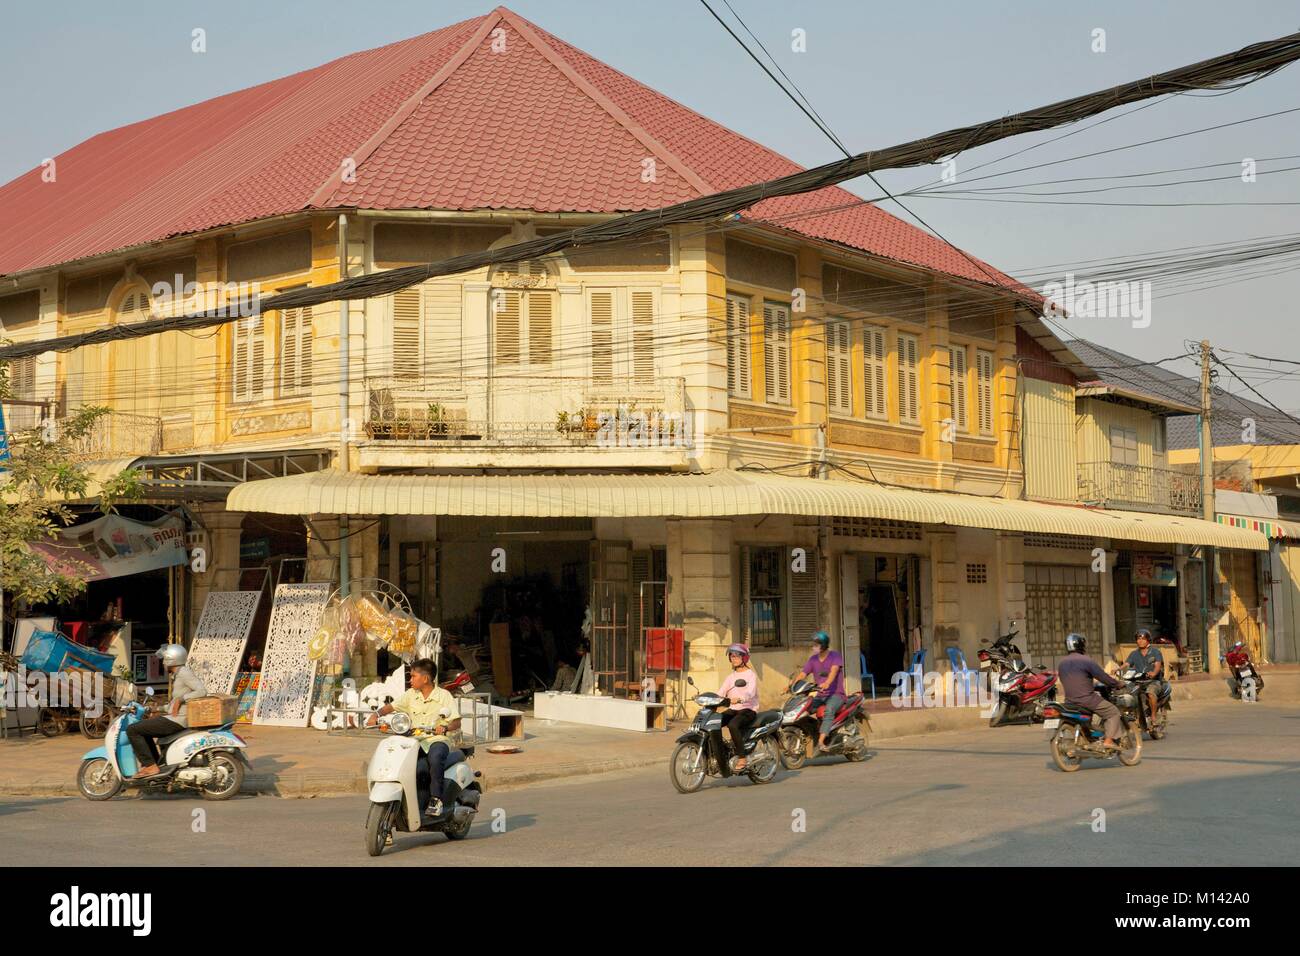 Kambodscha, Battambang, Roller vorbei vor der französischen kolonialen Gebäude in einer Straße durch elektrische Drähte gekreuzt Stockfoto